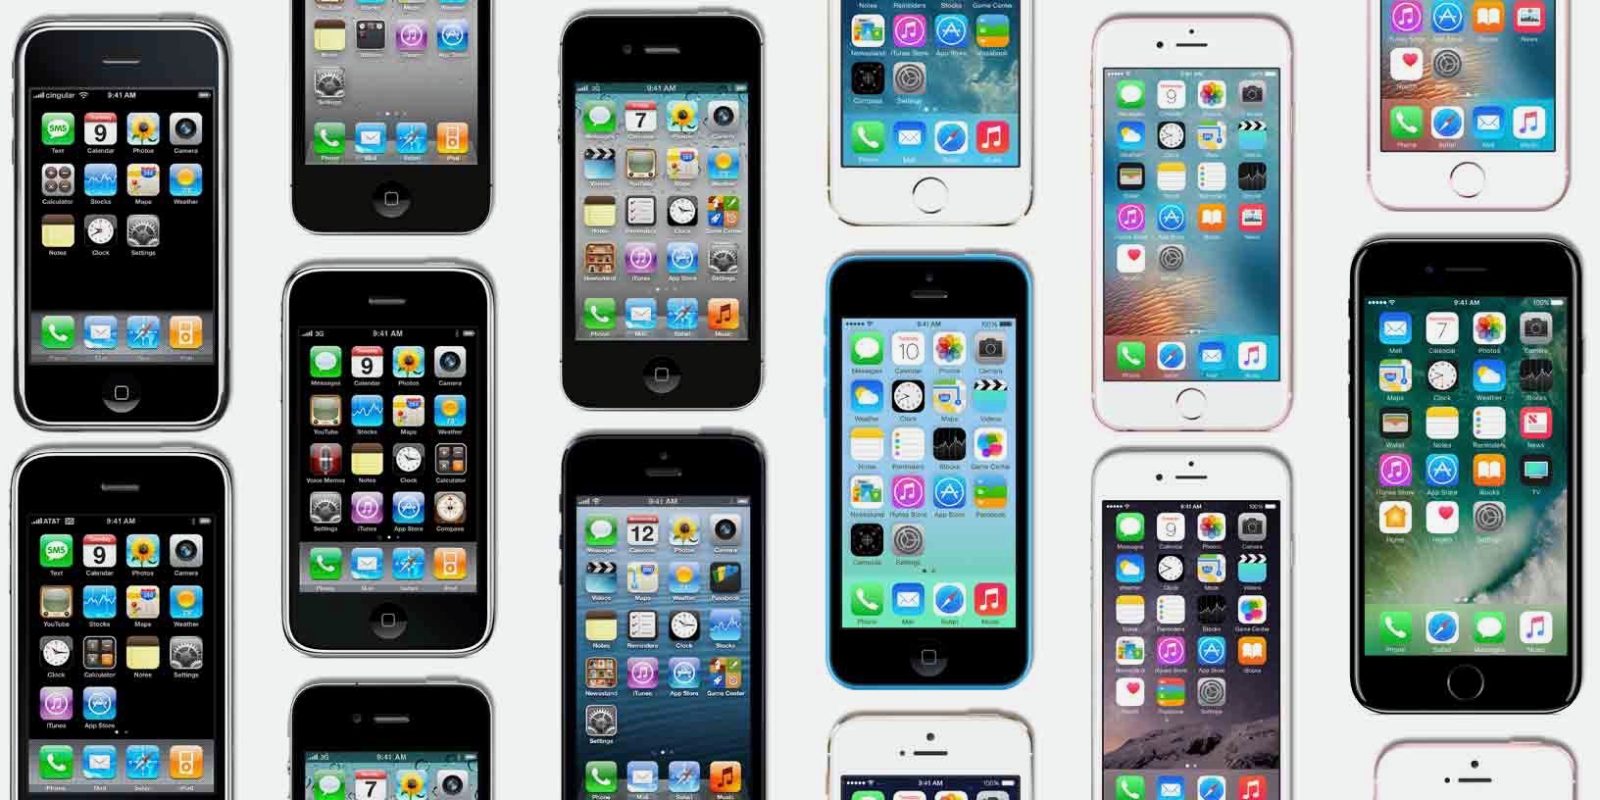 ครบรอบ 10 ปี iPhone เรามาดูกันดีกว่าว่าจากรุ่นแรกจนถึงรุ่นปัจจุบัน iPhone มีการเปลี่ยนแปลงไปยังไงบ้าง